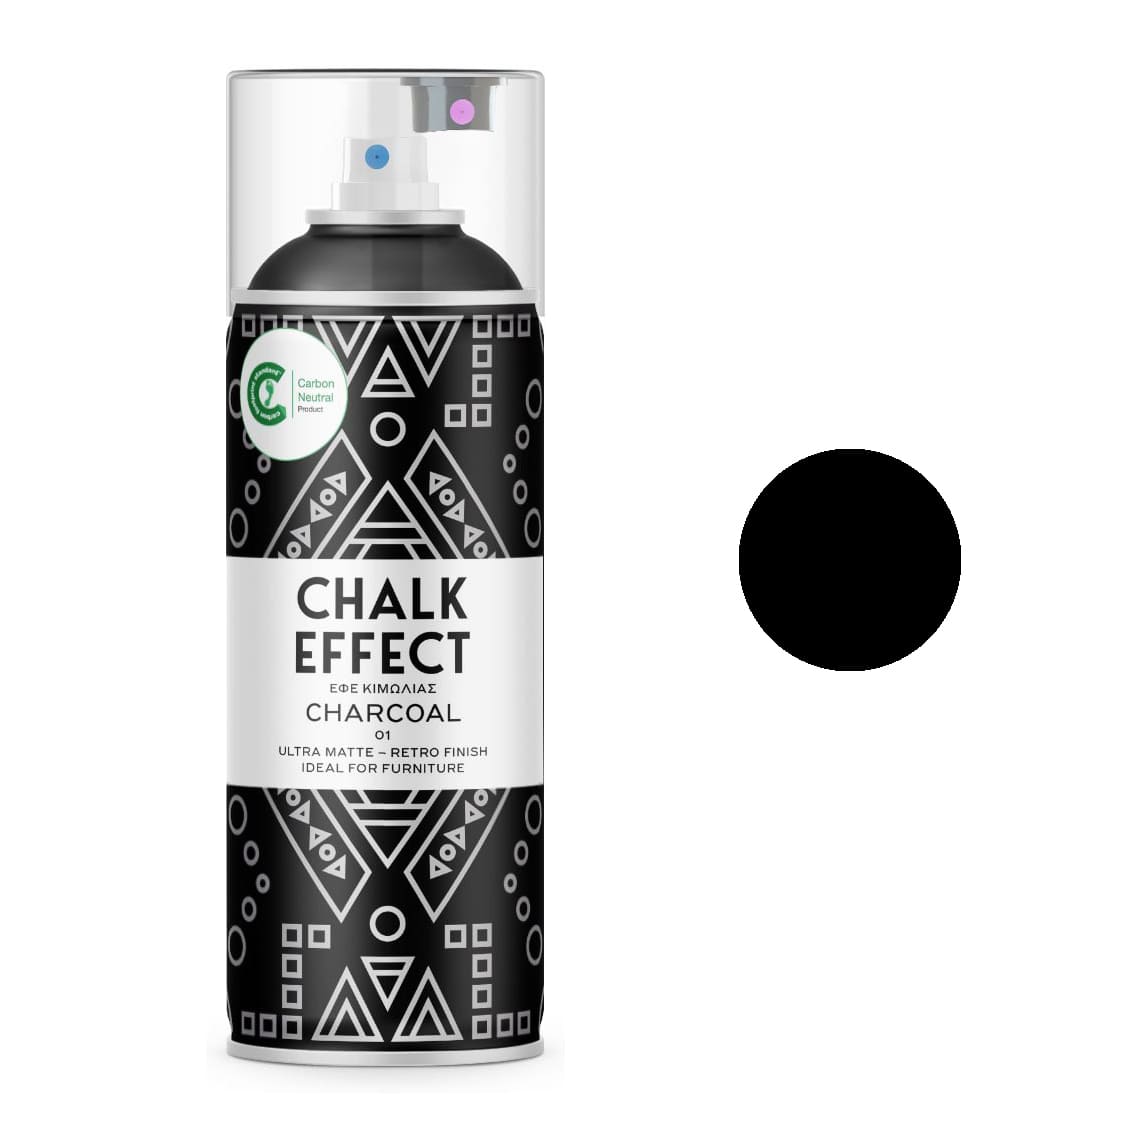 CHALK EFFECT LINE (CHARCOAL) - ΣΠΡΕΫ ΓΙΑ ΕΦΕ ΚΙΜΩΛΙΑΣ N01 - CHARCOAL